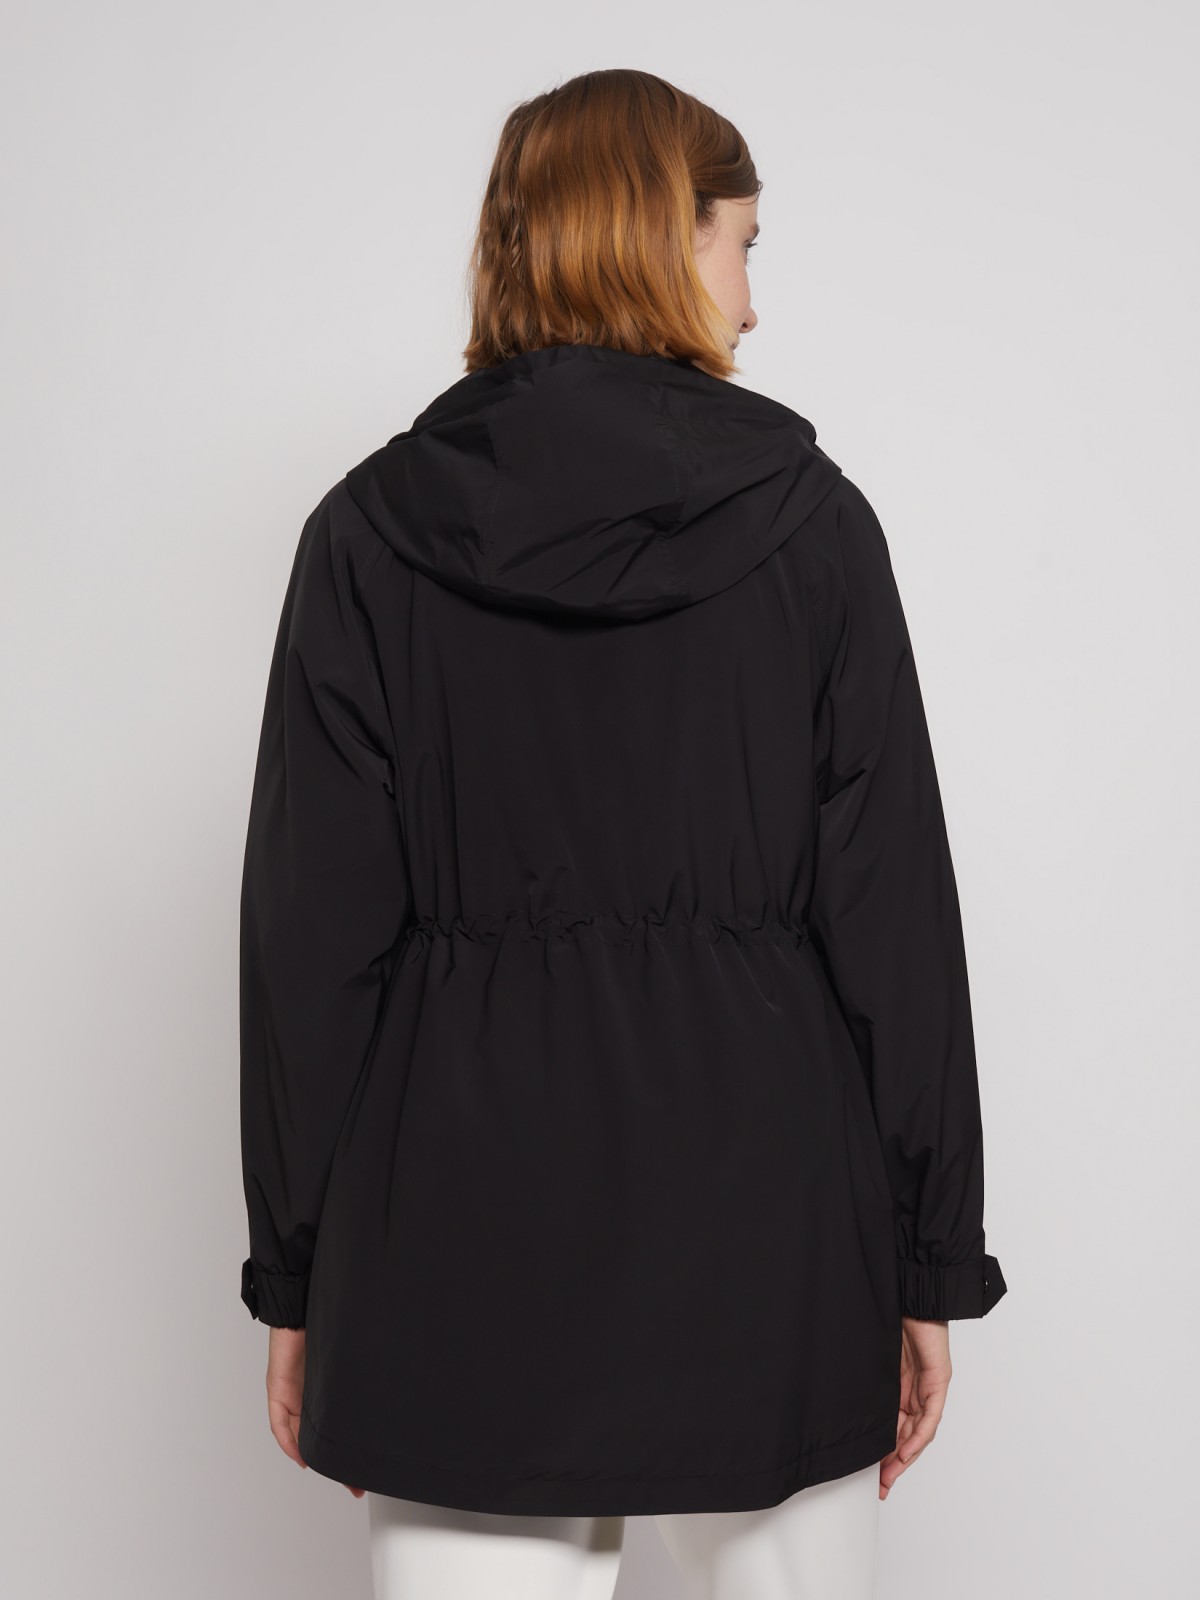 Куртка-парка с капюшоном zolla 022215712164, цвет черный, размер S - фото 5